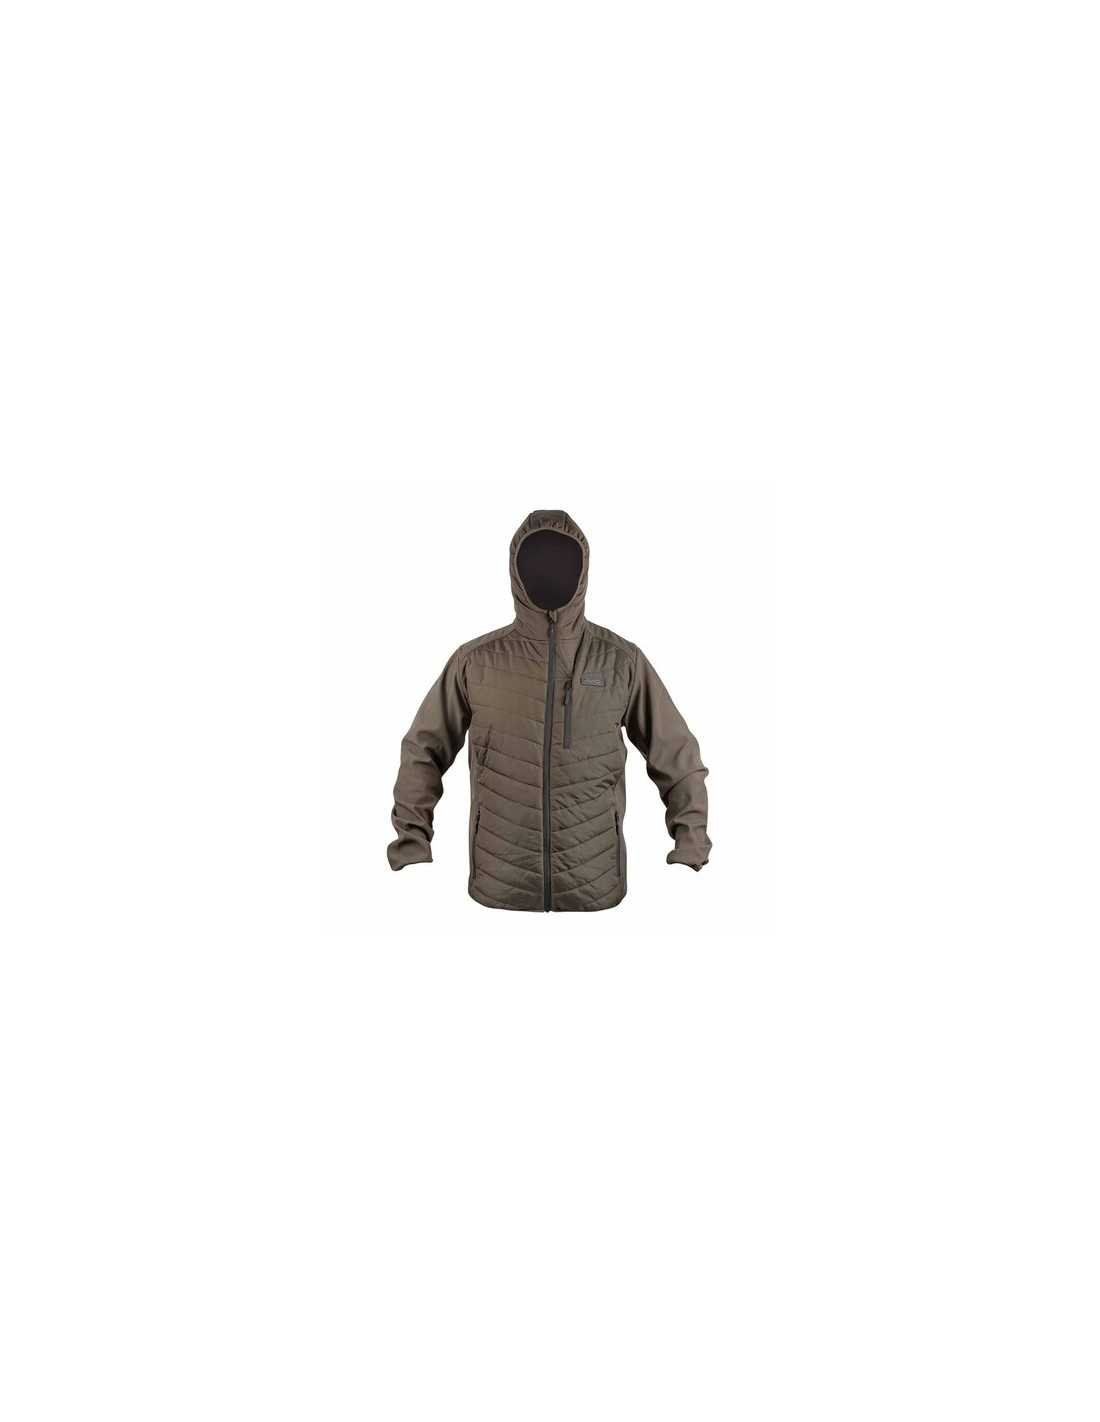 AVID CARP Thermite Pro Jacket яке